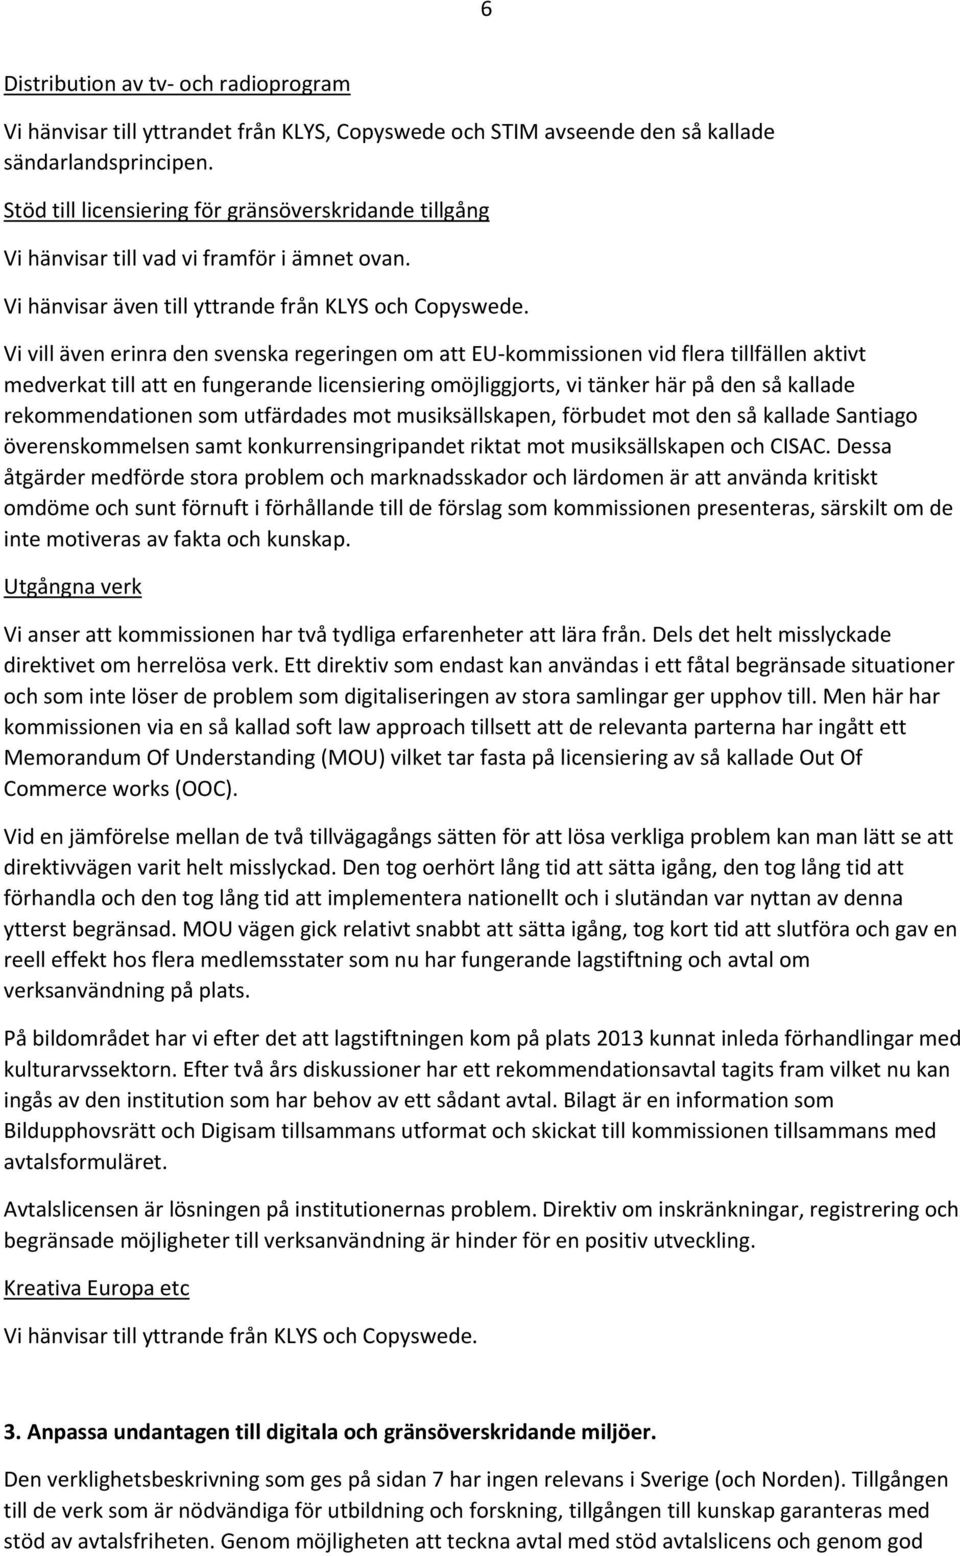 Vi vill även erinra den svenska regeringen om att EU kommissionen vid flera tillfällen aktivt medverkat till att en fungerande licensiering omöjliggjorts, vi tänker här på den så kallade